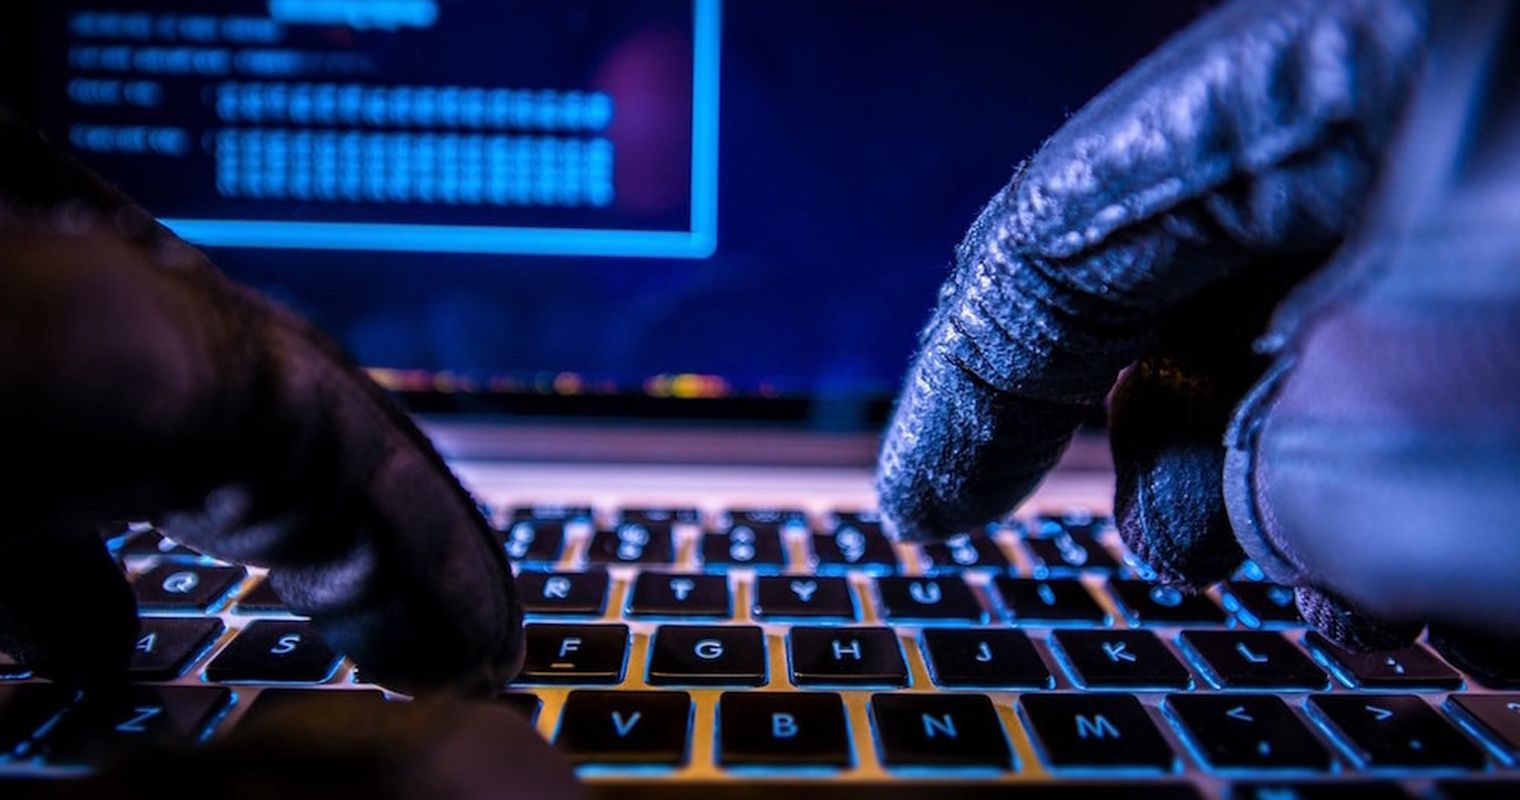 Aktionswoche will für Cyberkriminalität sensibilisieren